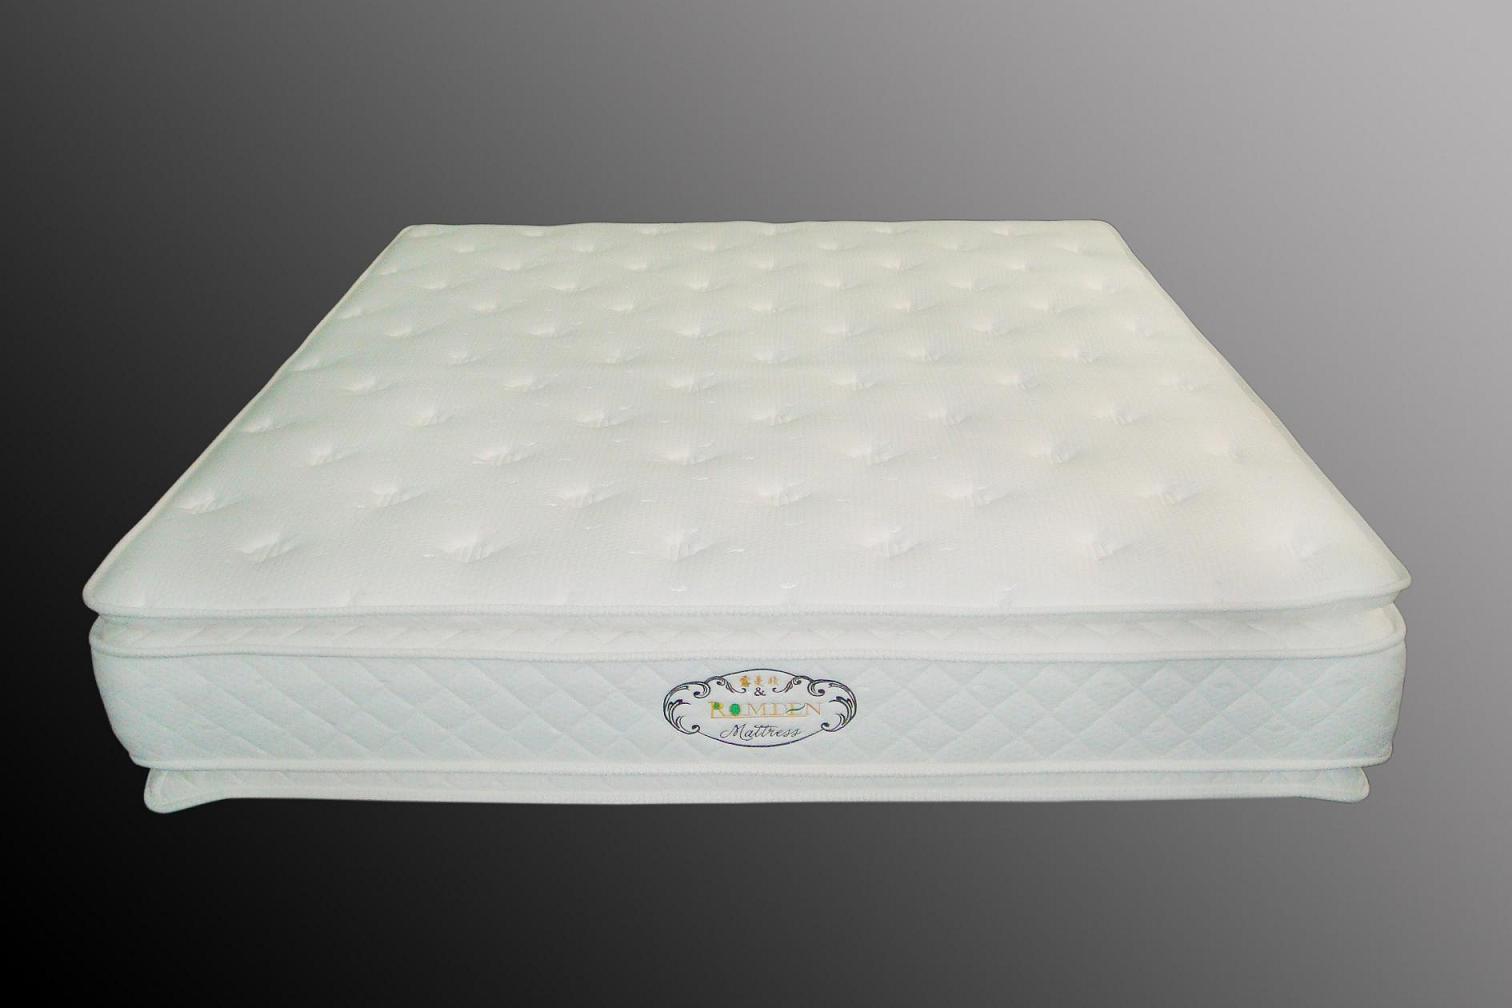 memory foam and natural latex mattress - RMD-Z105